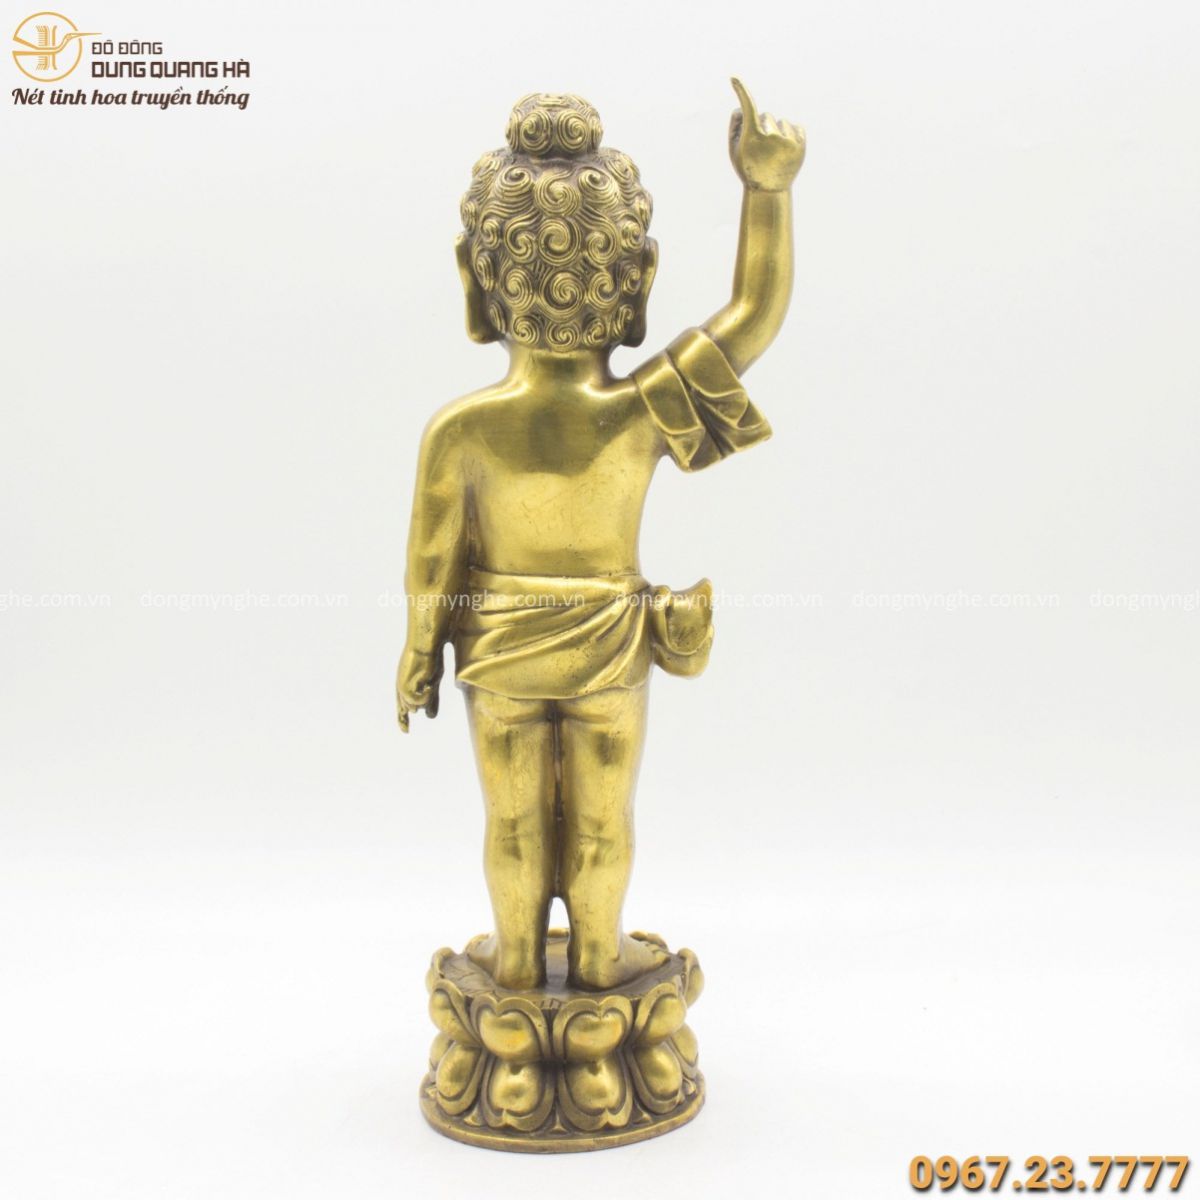 Tượng Phật Đản Sanh cao 40cm bằng đồng vàng đẹp tinh xảo